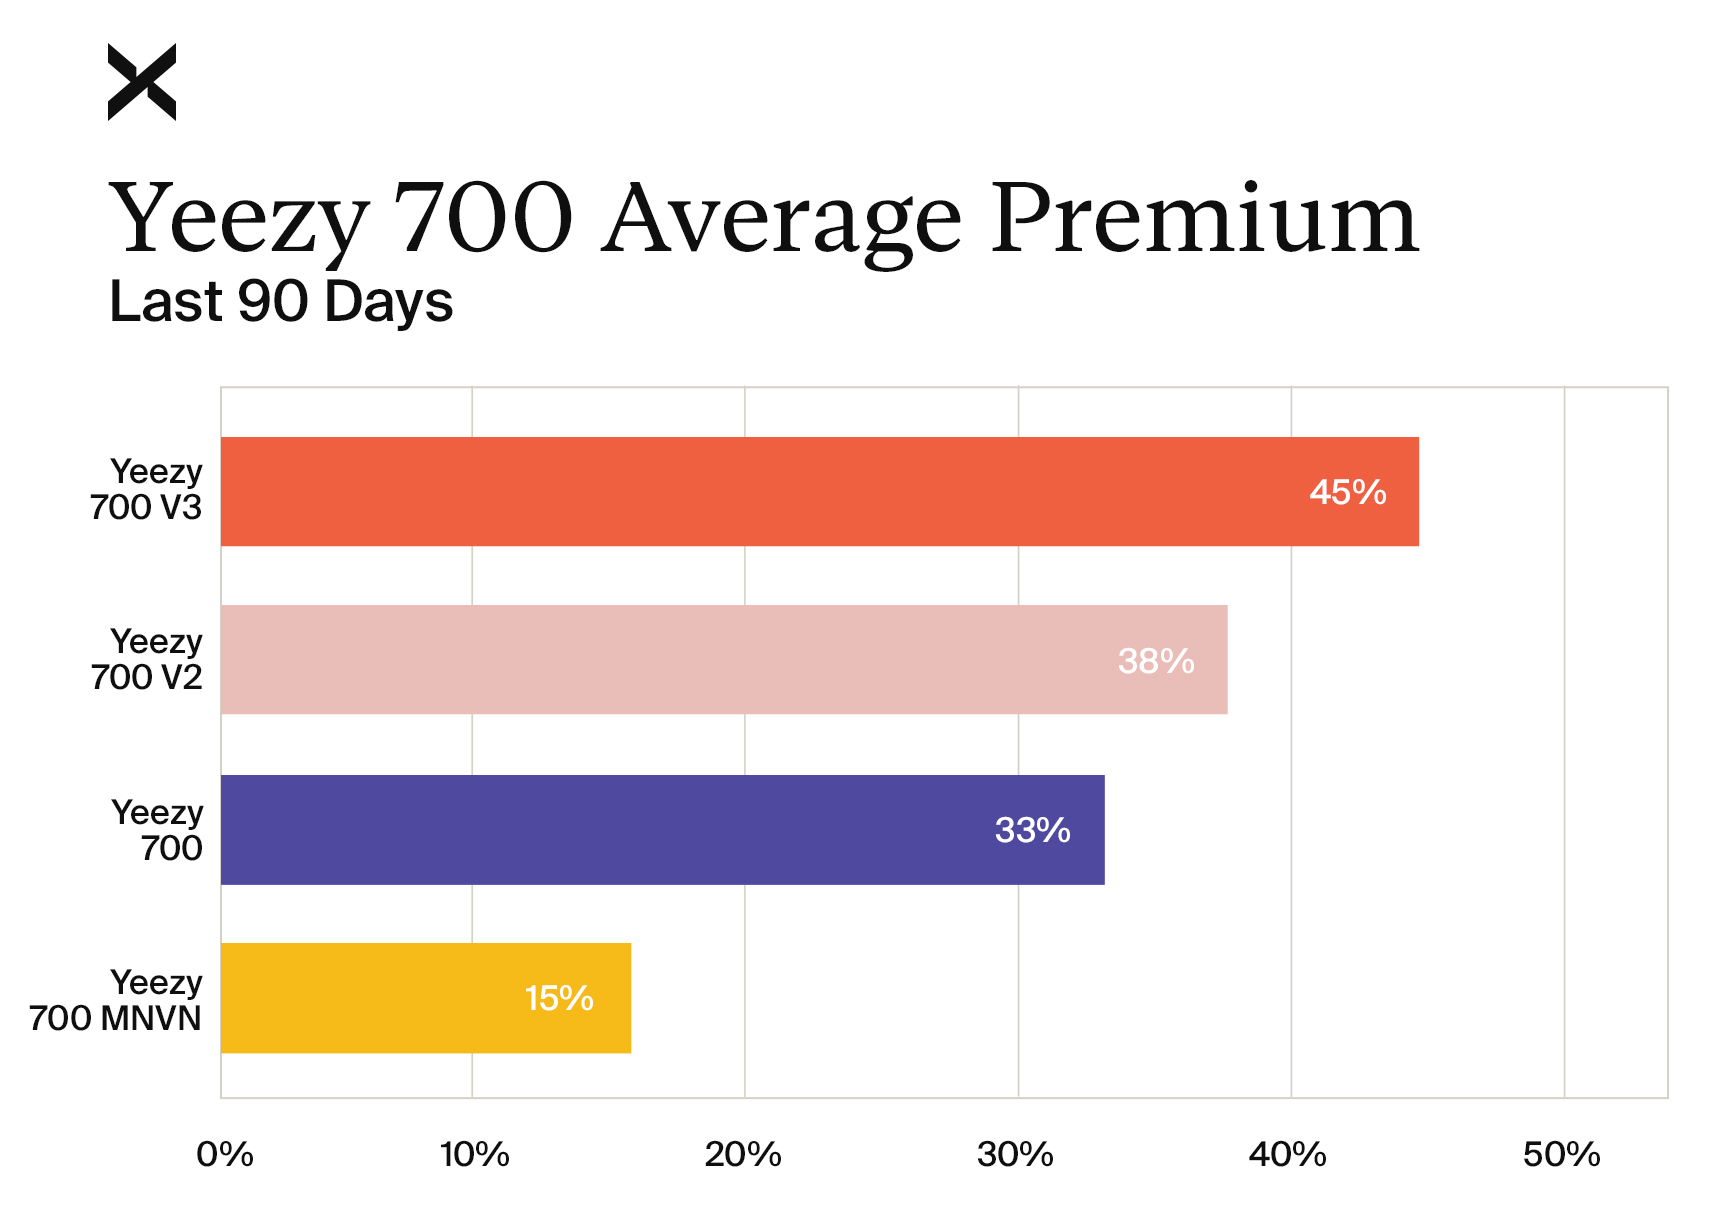 Yeezy Shoes - Price Premium